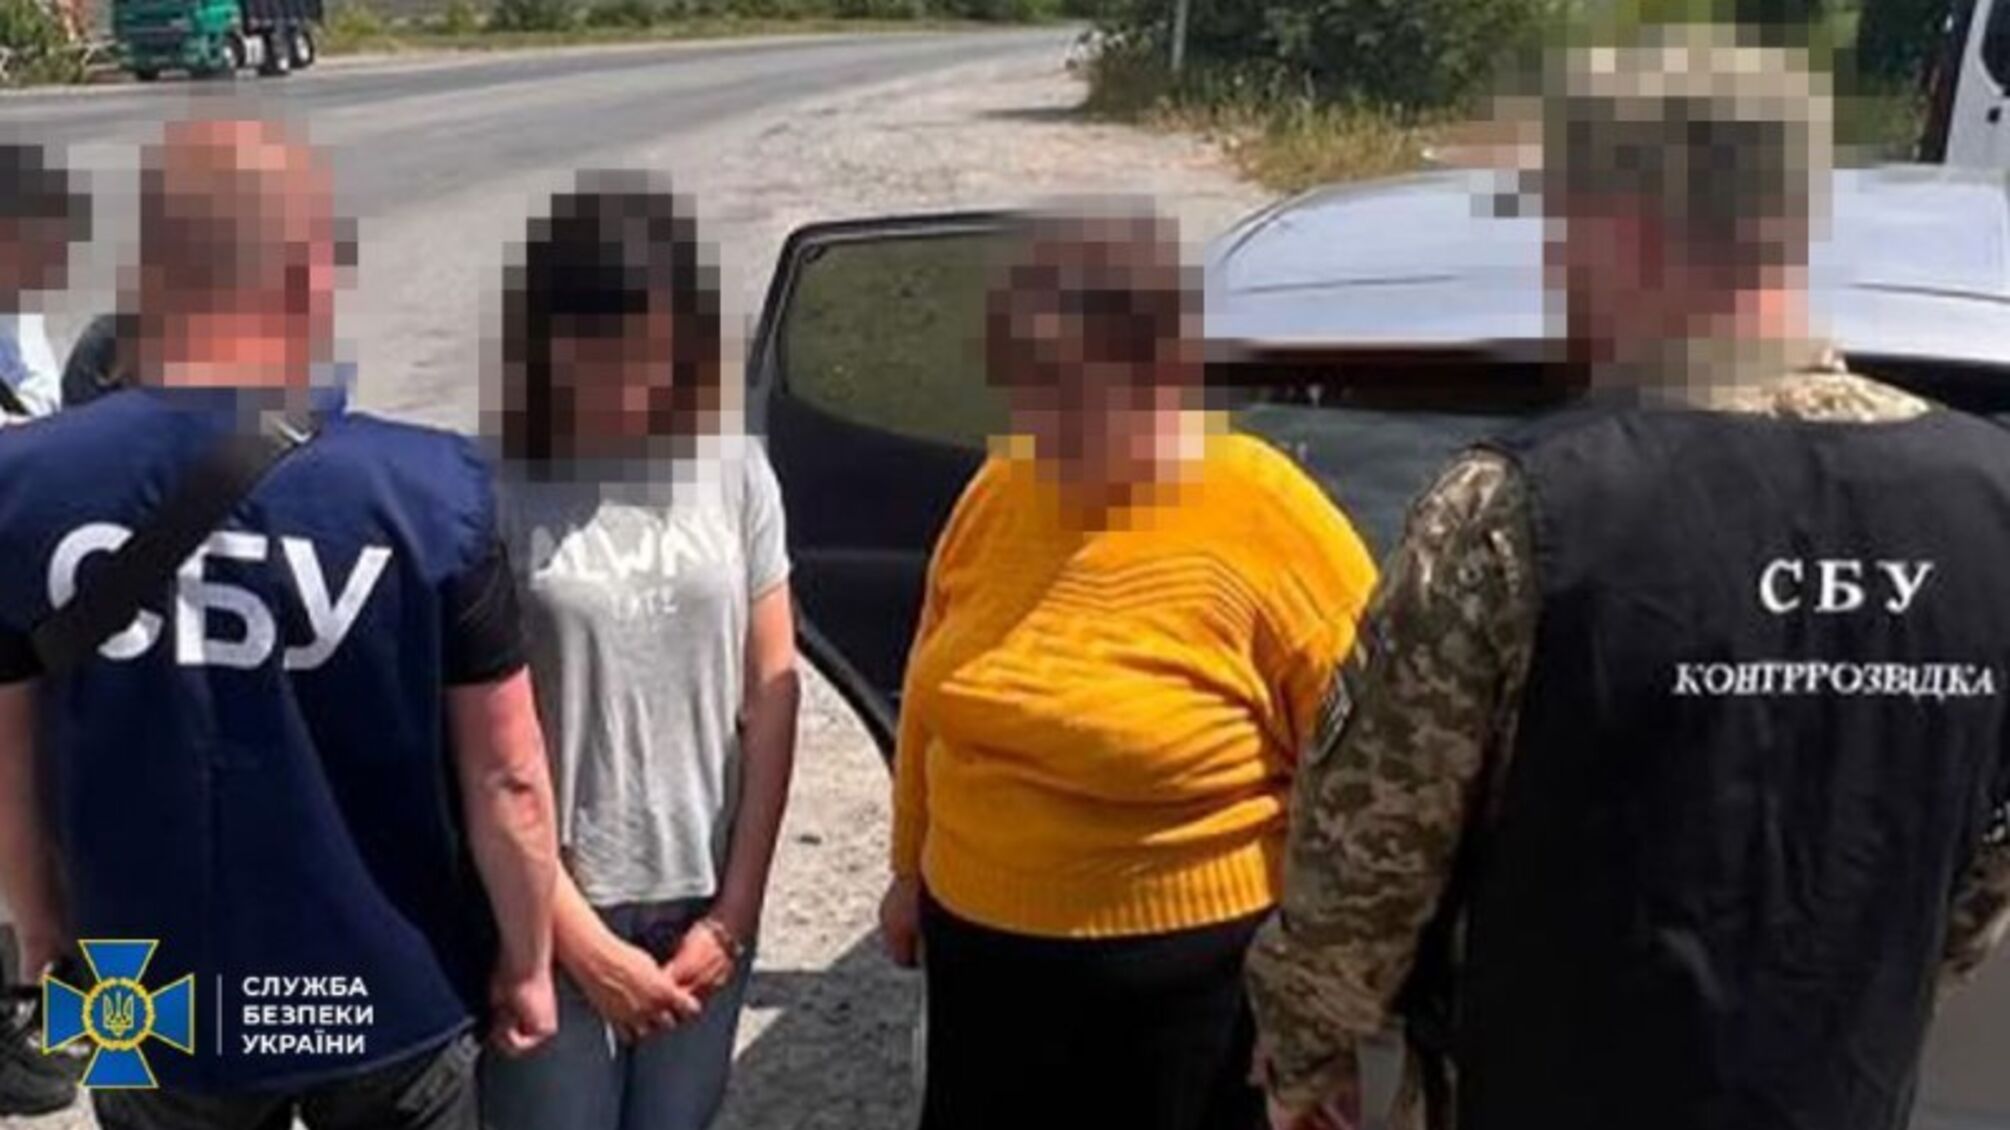 Хмельницкая депутат вместе со своими детьми шпионила для фсб: СБУ задержала семью